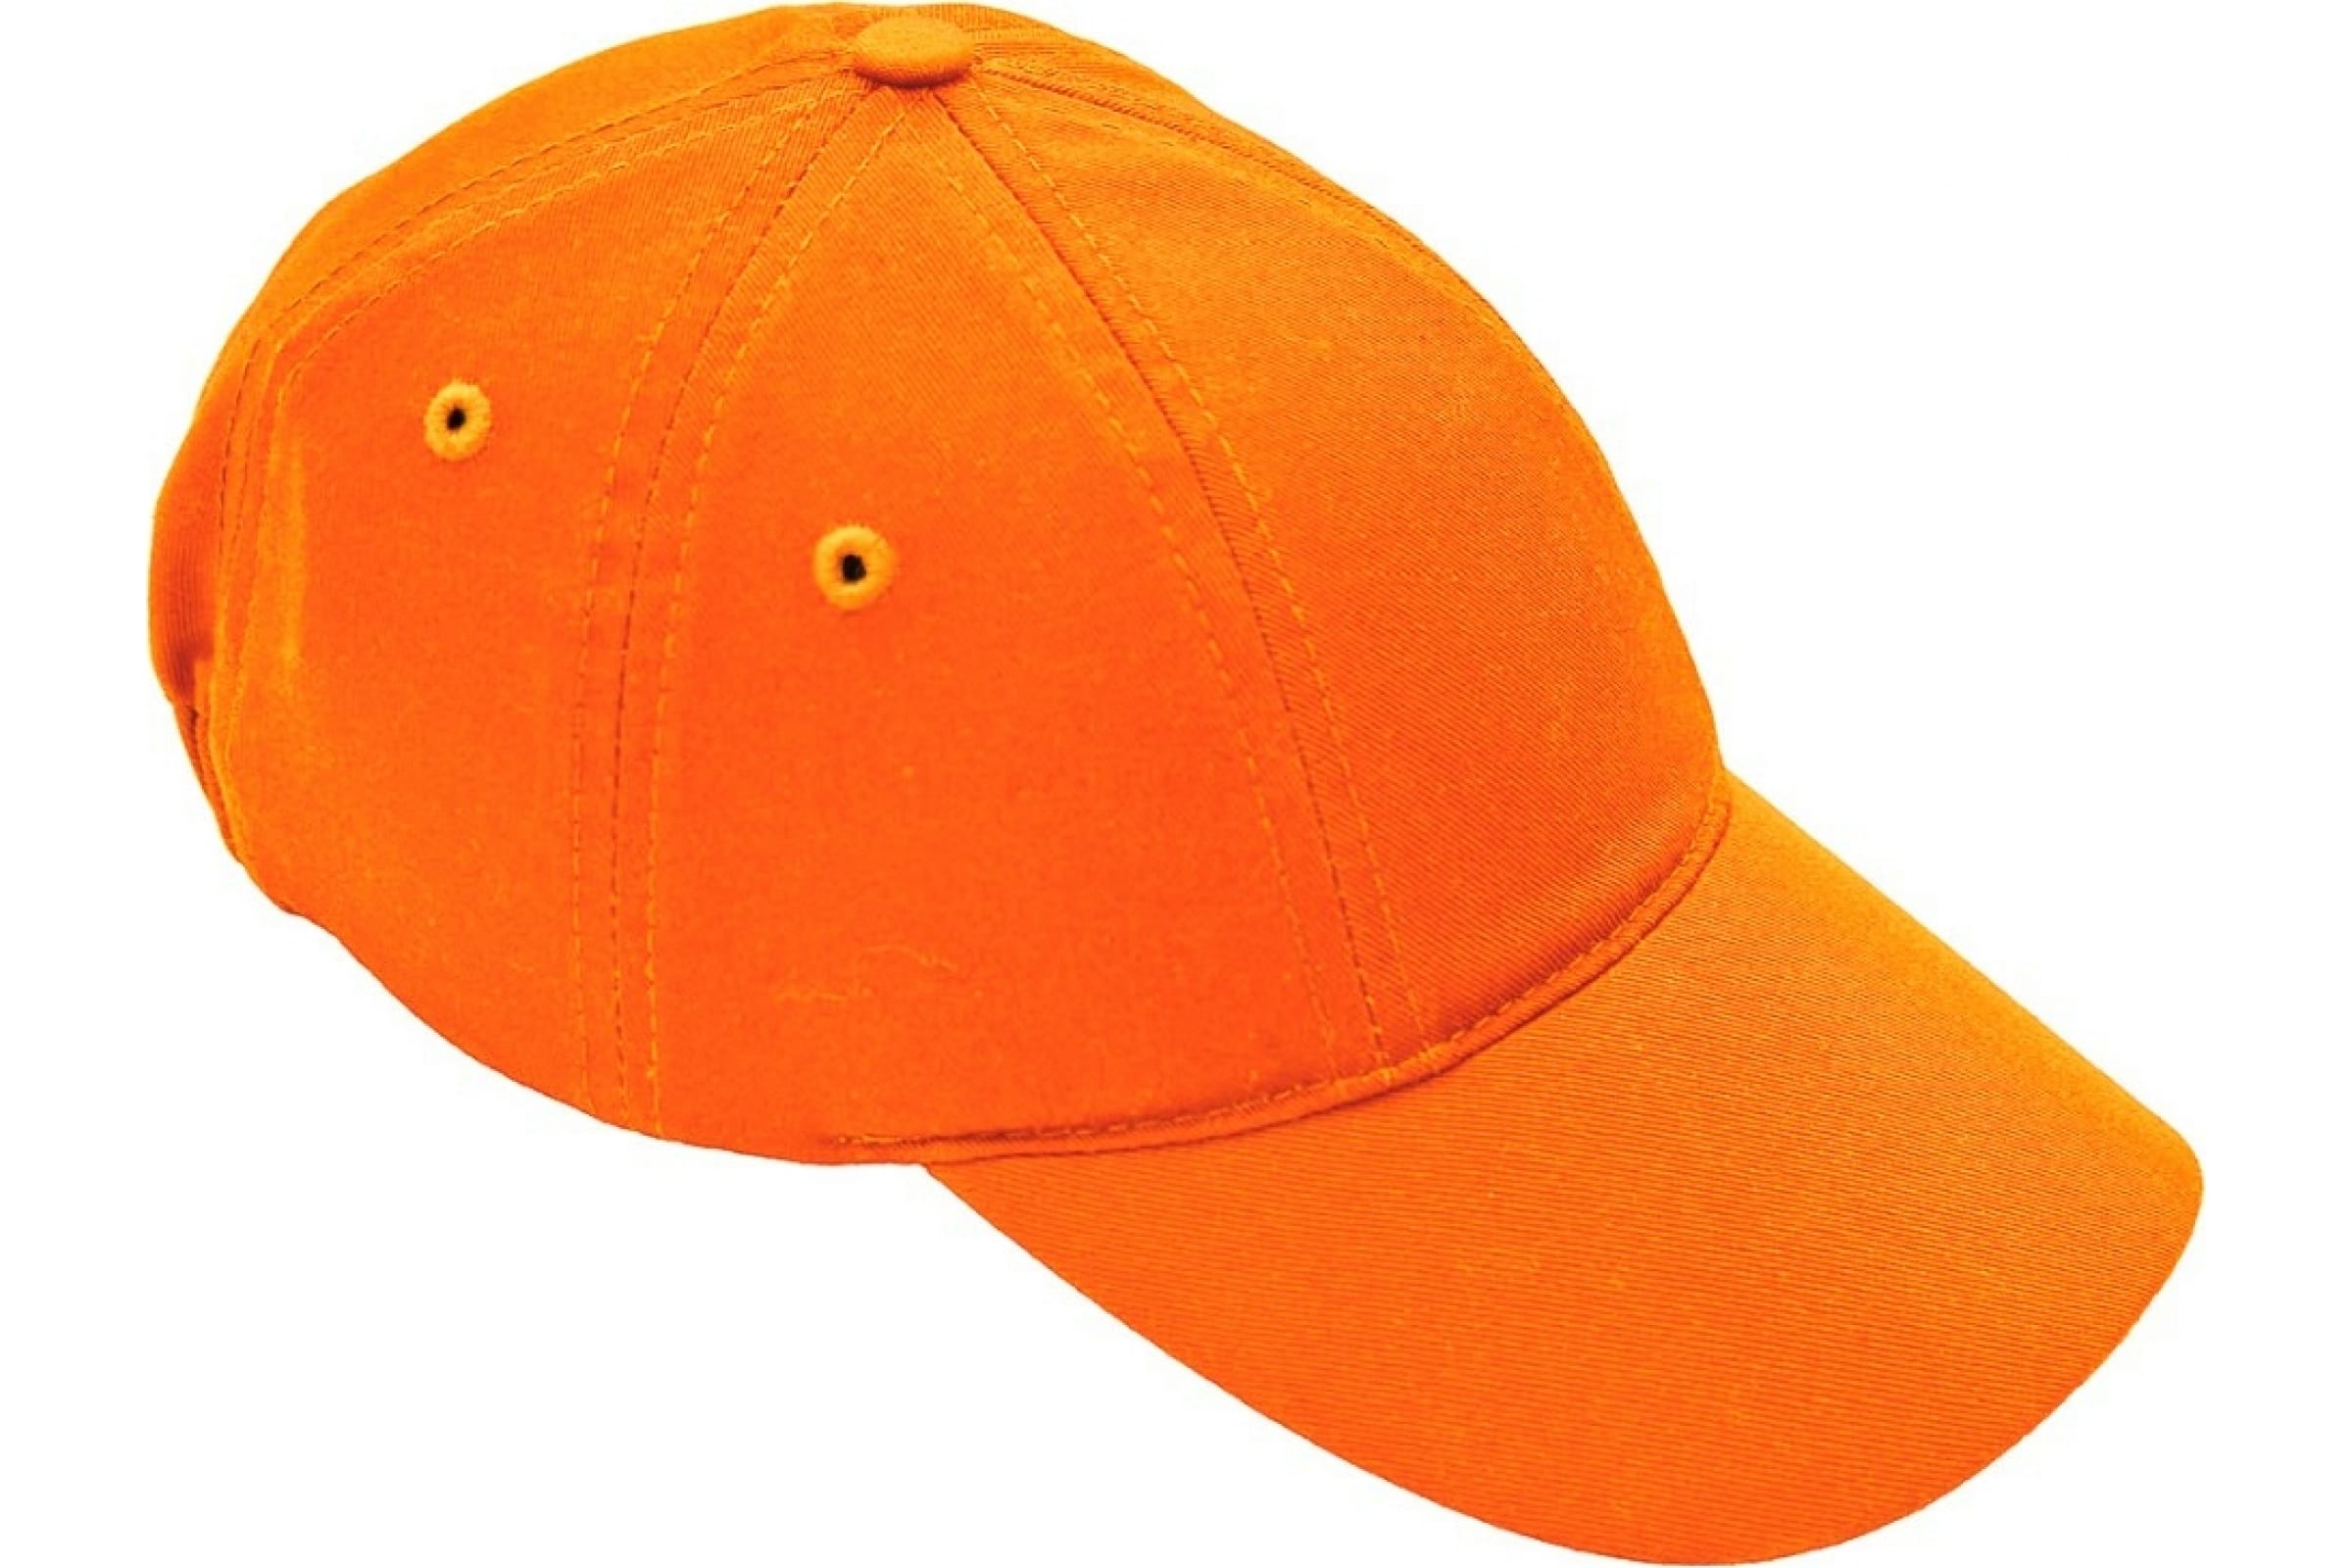 ЕЛАНПЛАСТ Каскетка защитная оранжевая КАС502 (89186)